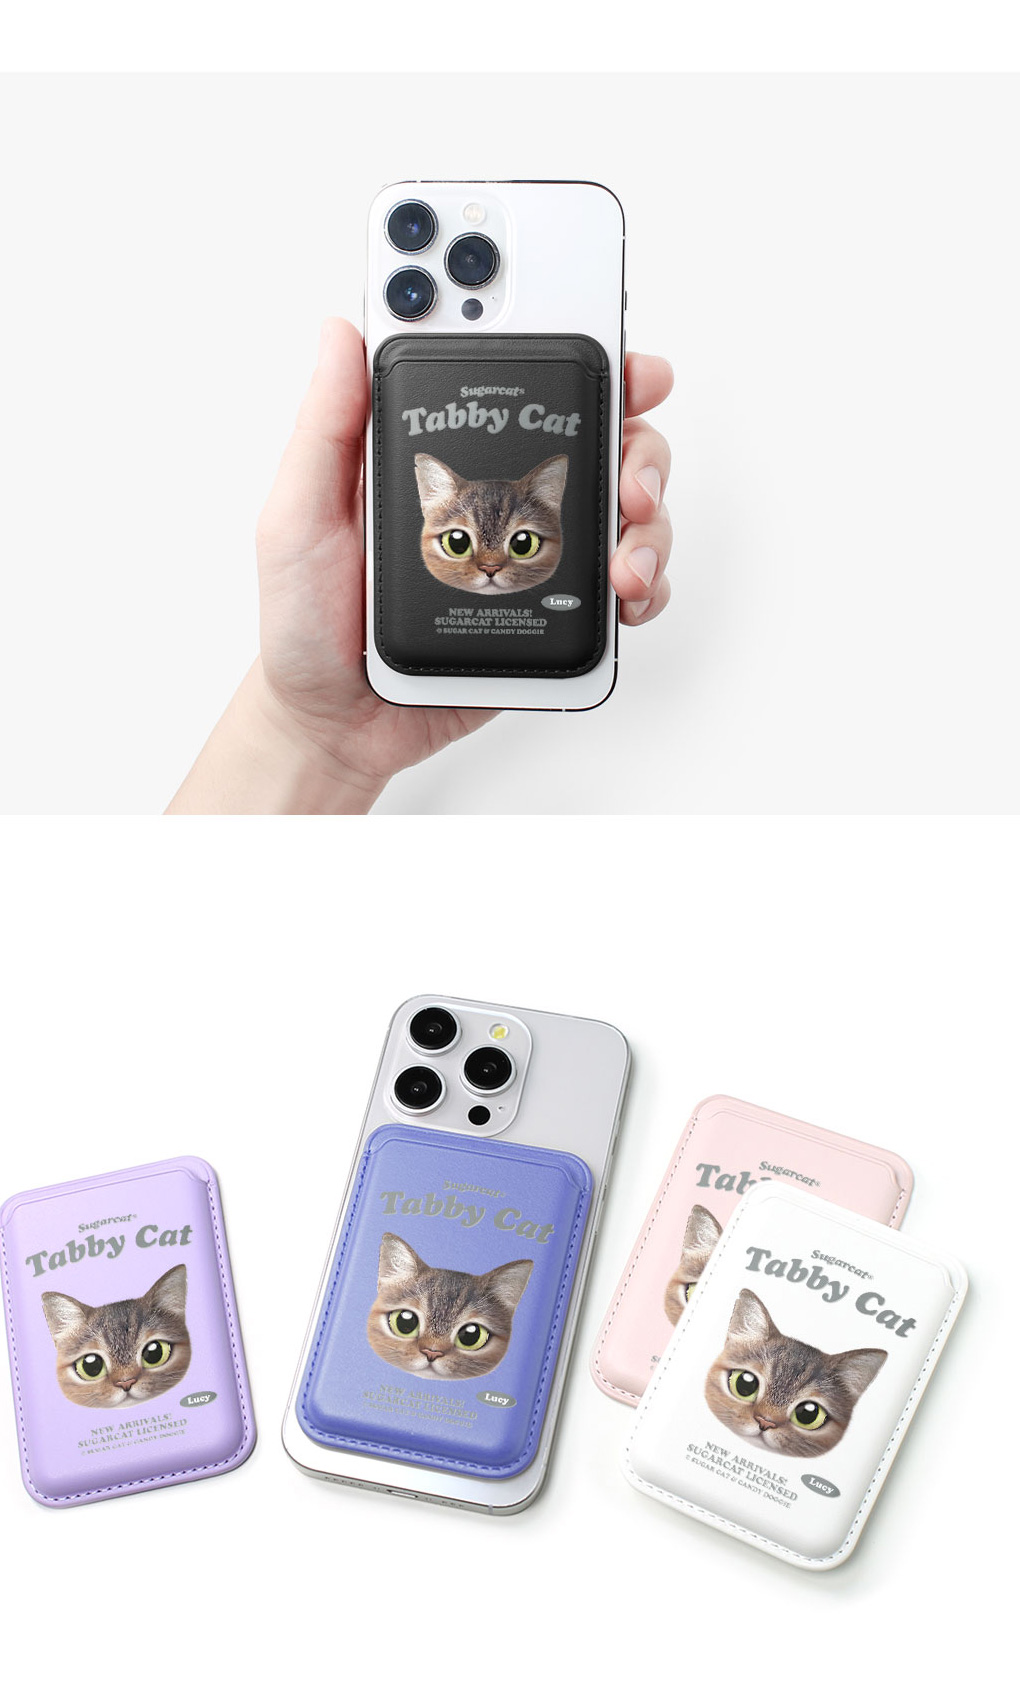 [sugarcat] MagSafe カードケース トラネコ tabby cat / トラネコデザイン マグセーフ MagSafe対応 レザーウォレット カードケース シュガーキャット ペット #クリックポスト